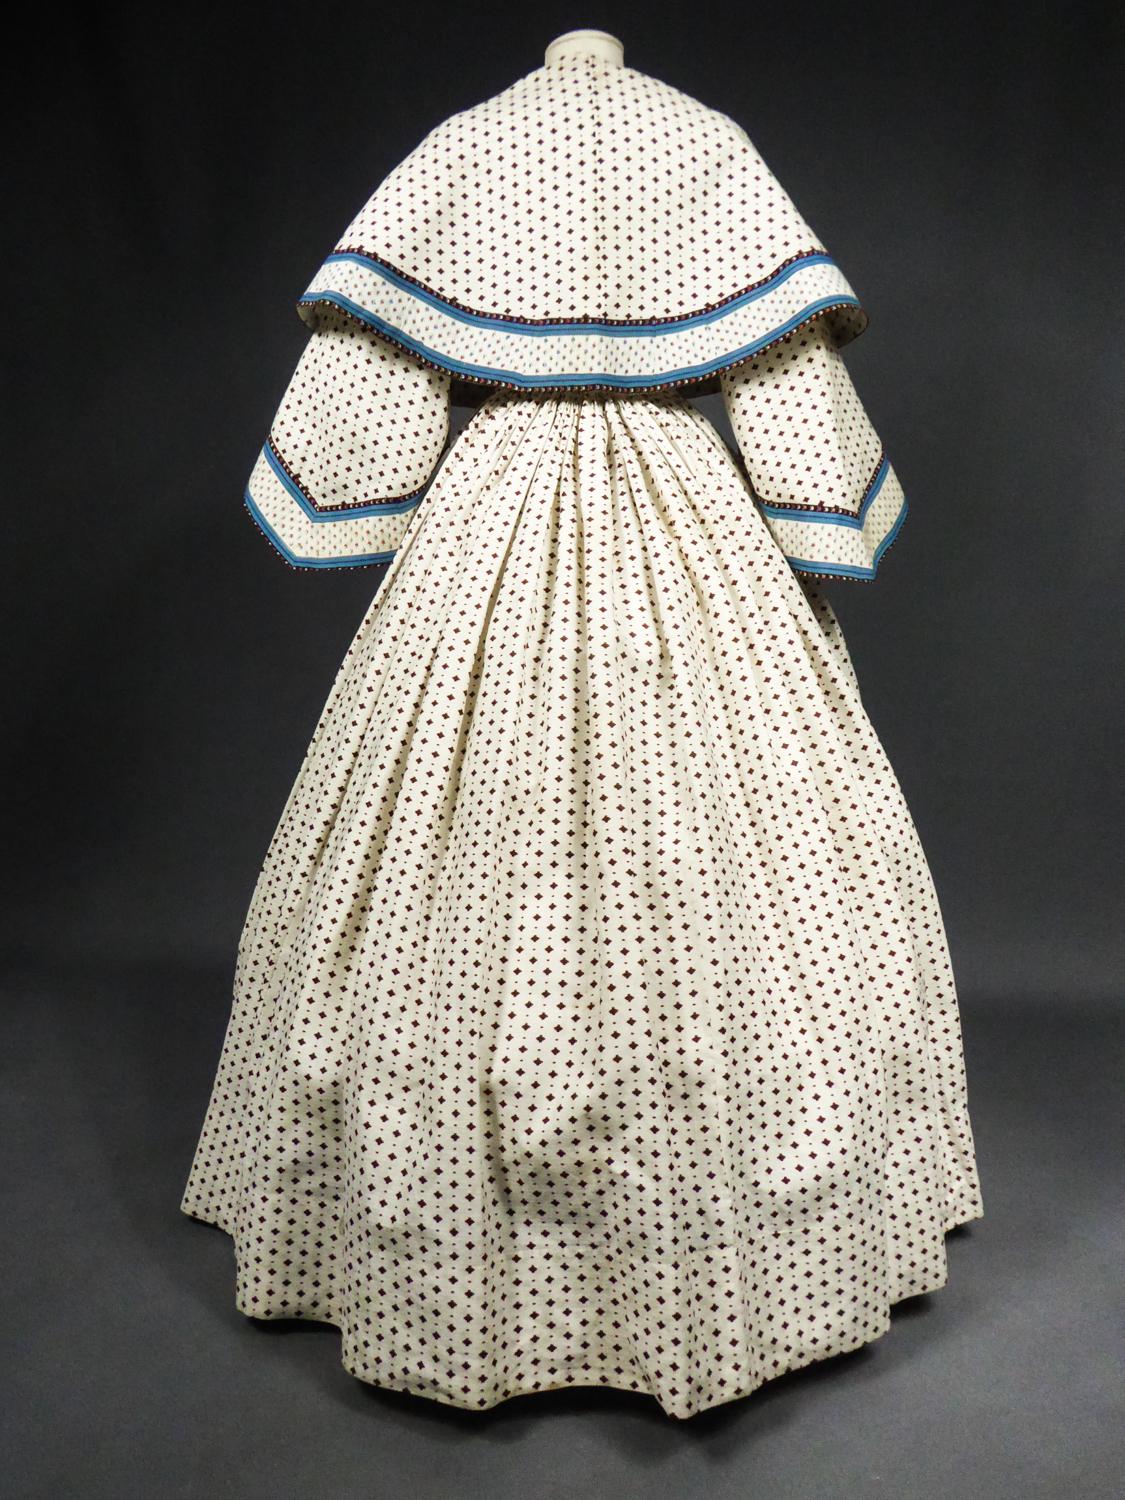 A Printed Cotton Crinoline Day Dress - France Napoleon III Period Circa 1865 4